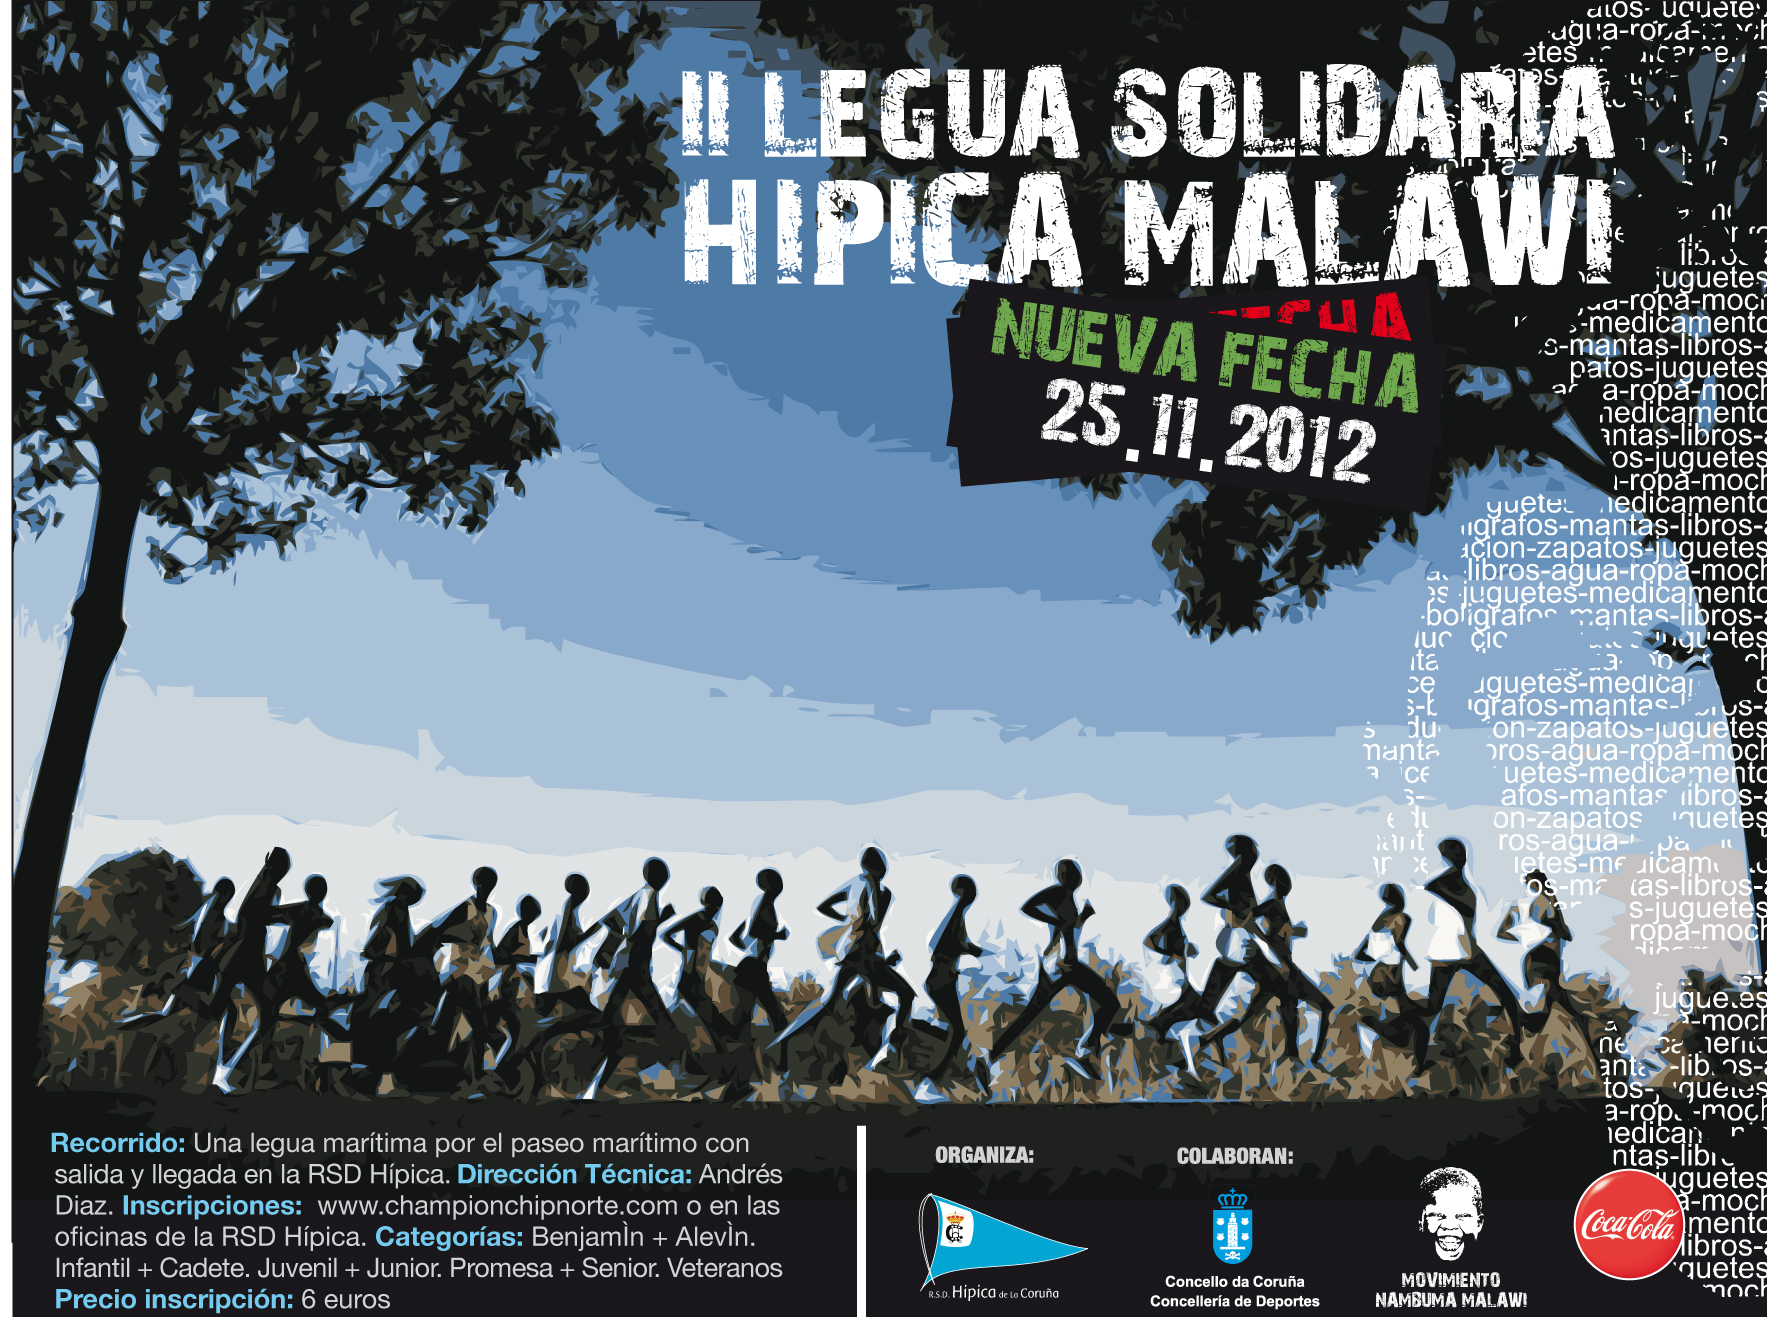 II Legua Solidaria Hípica-Malawi el 25 de noviembre en el paseo marítimo